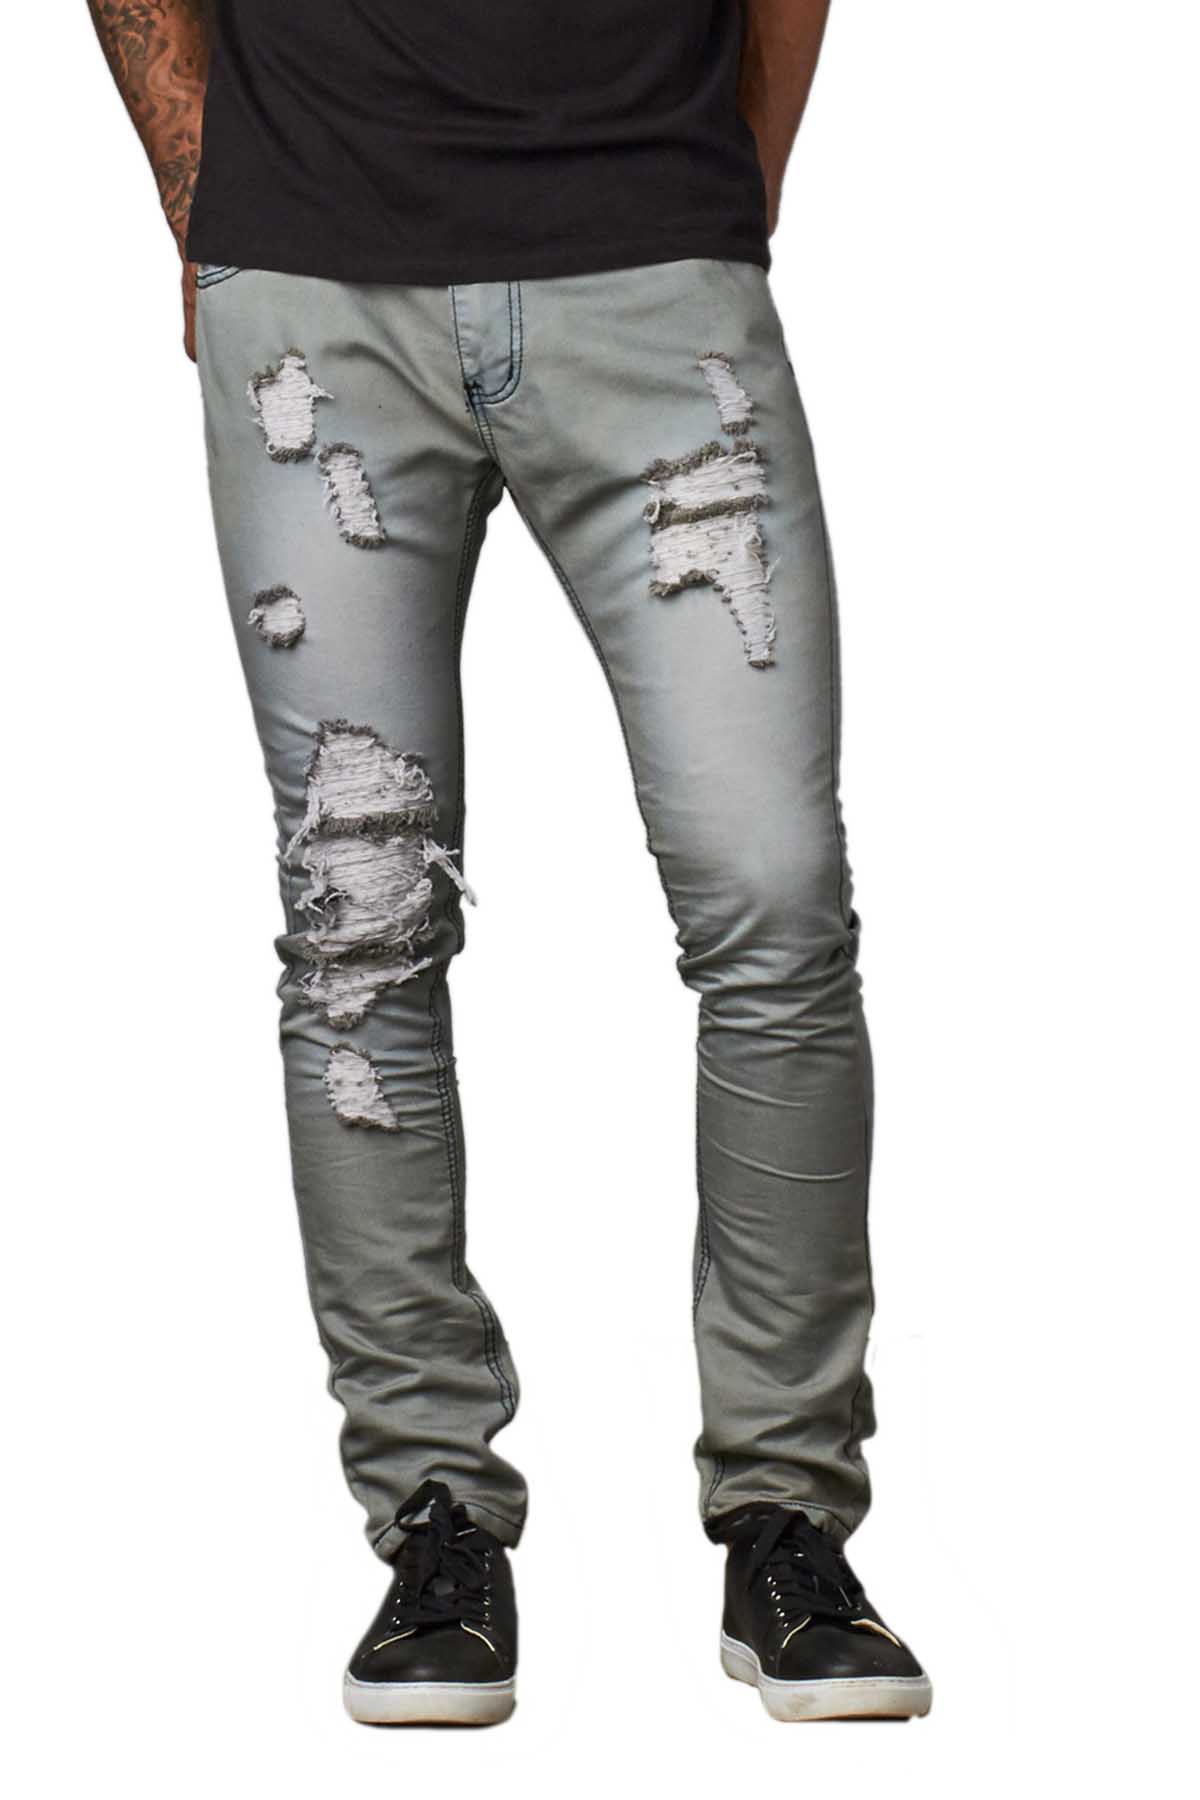 Recess Jeans Grey Distressed Slim Tapered Denim Pant